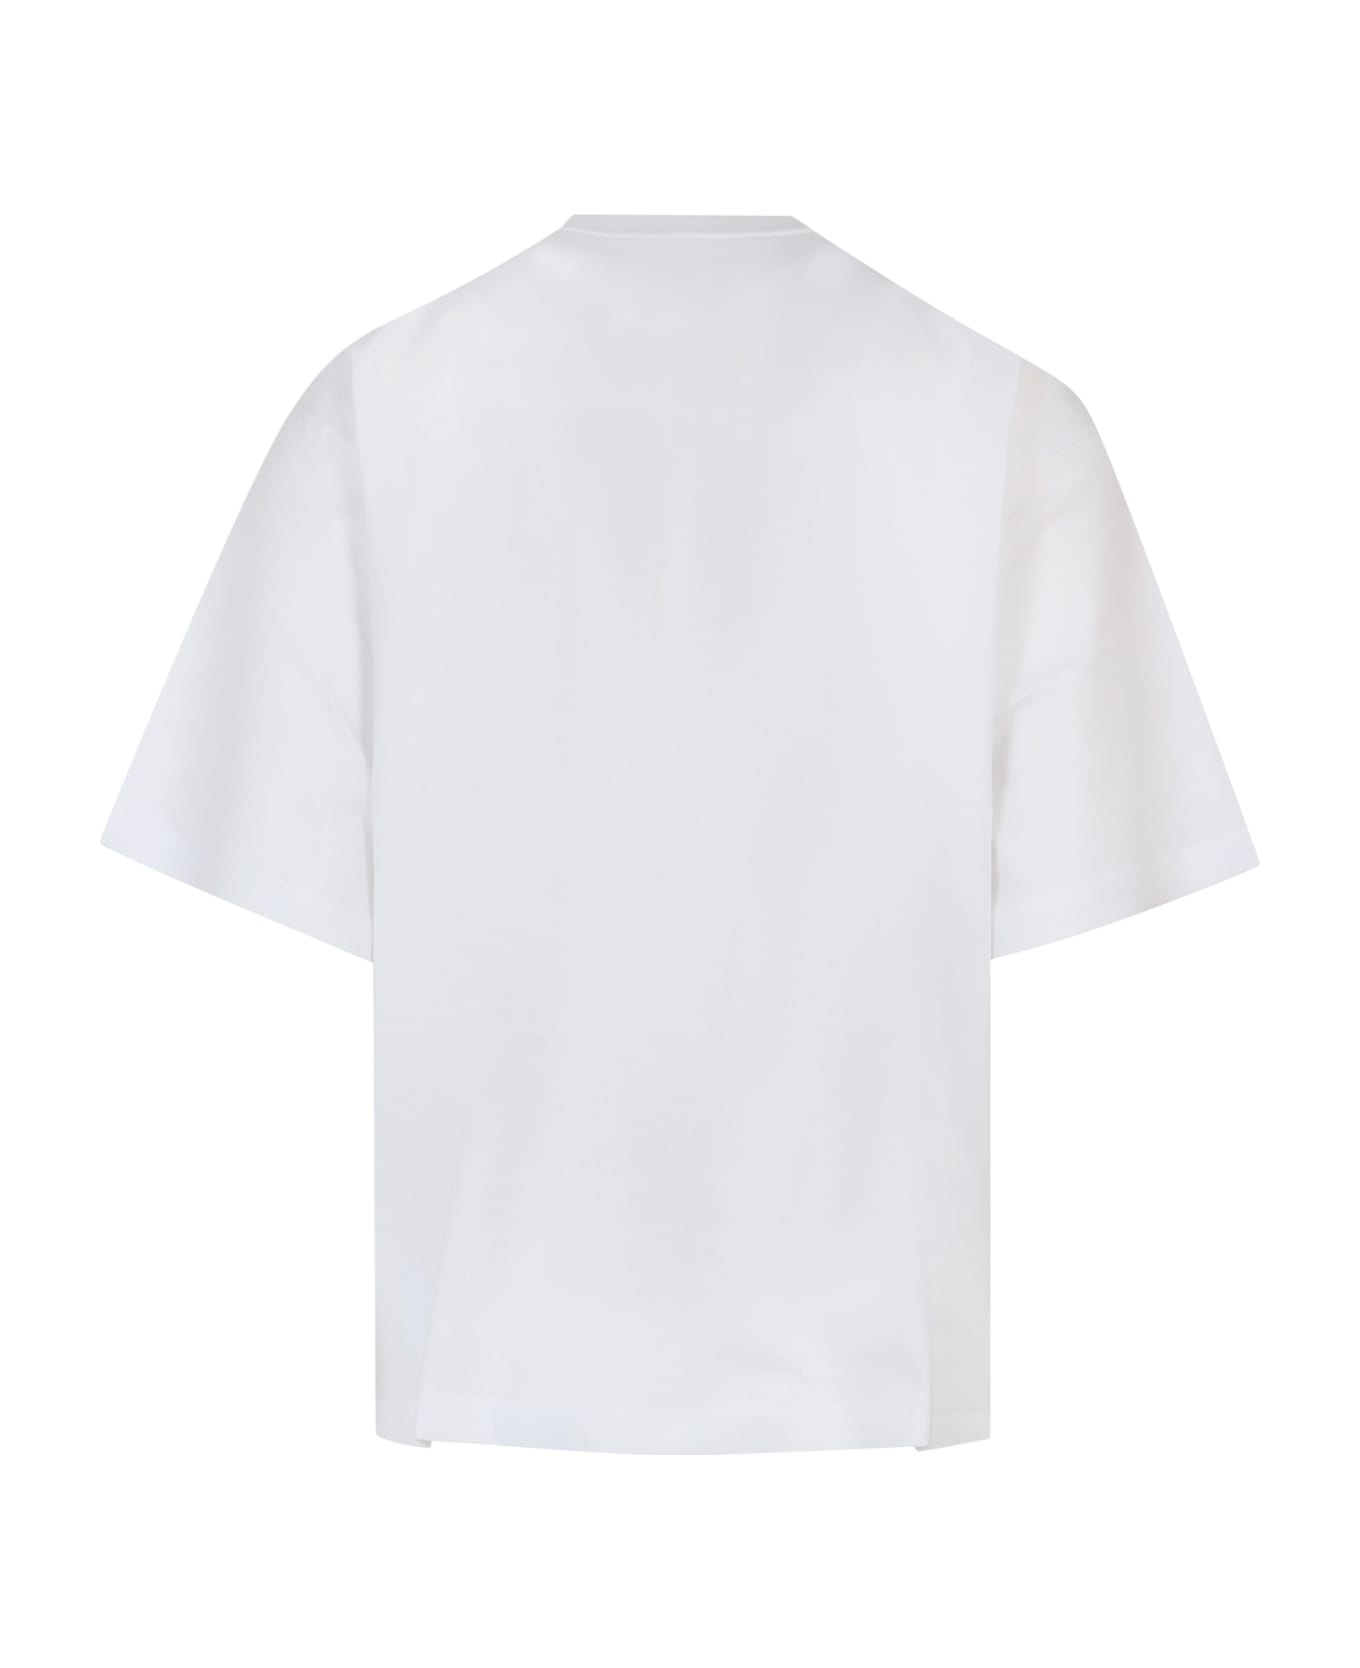 Marni T-shirt Marni - WHITE シャツ